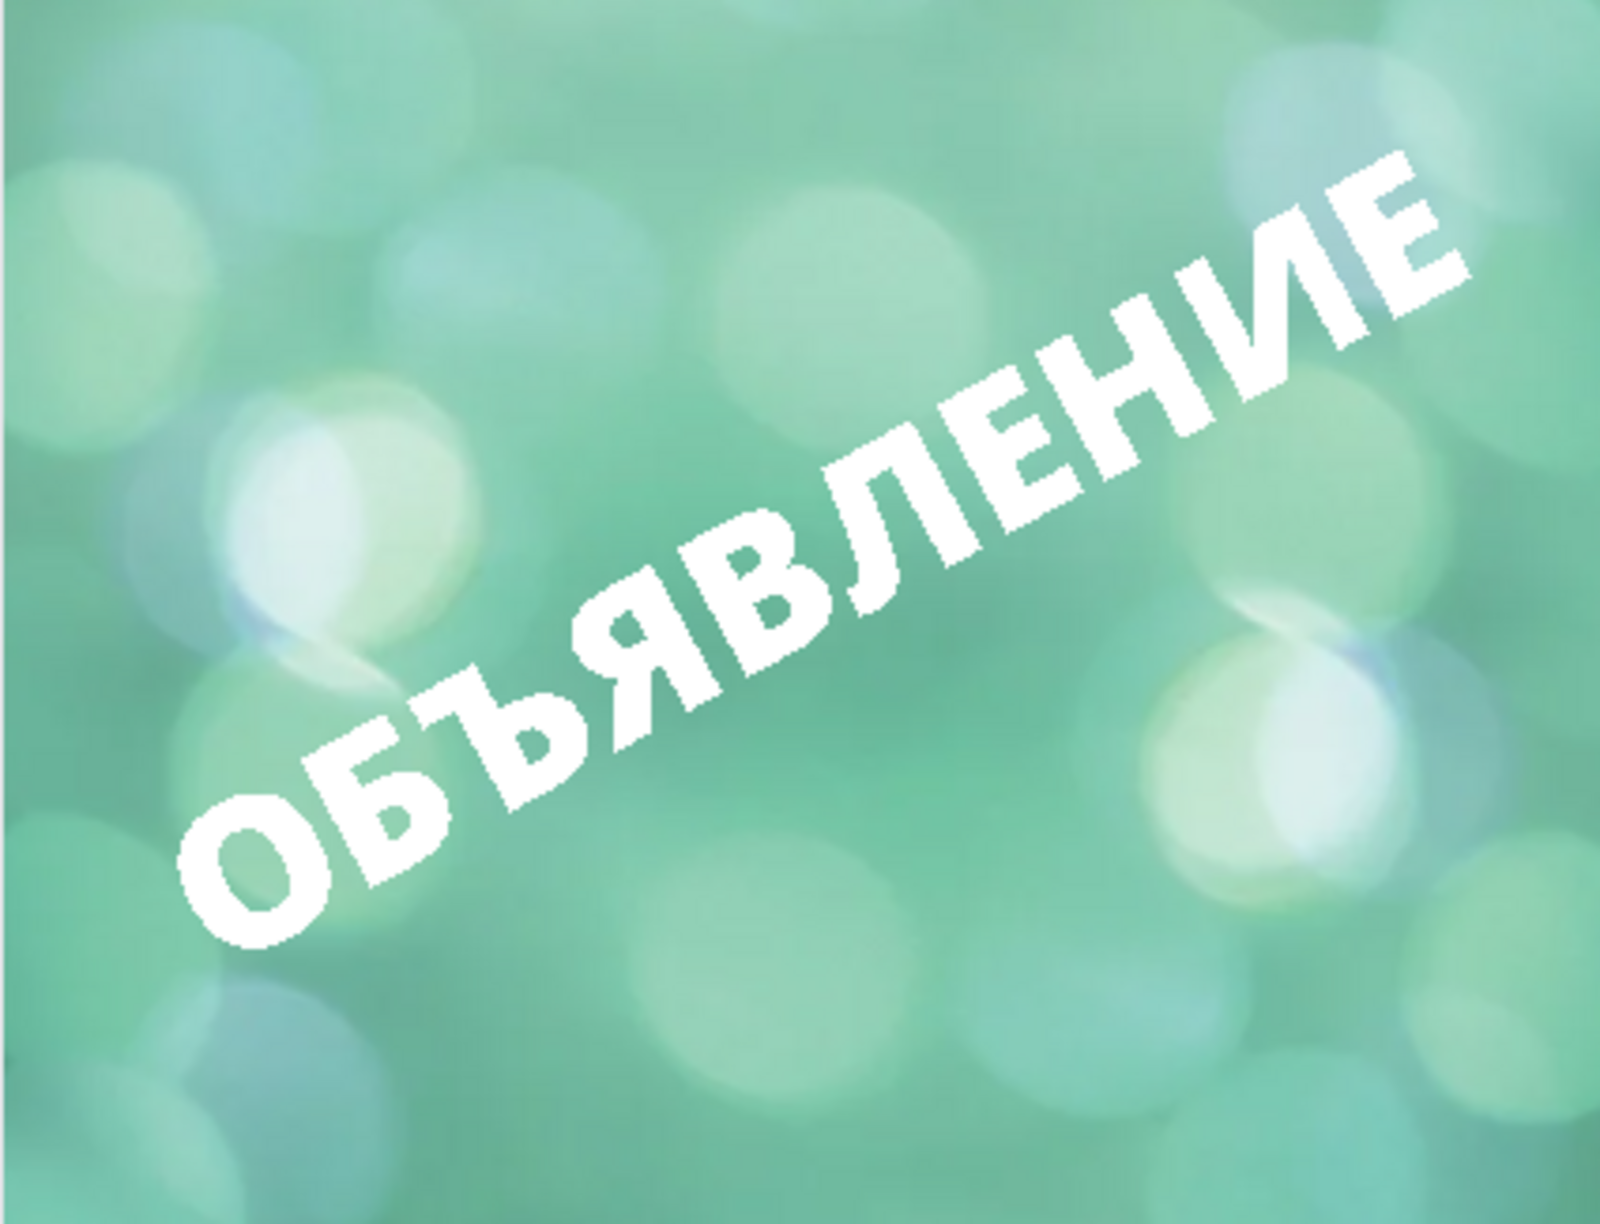 Сегодня состоится вебинар! Предприниматели Башкортостана узнают об особенностях разных источников привлечения инвестиций для бизнеса